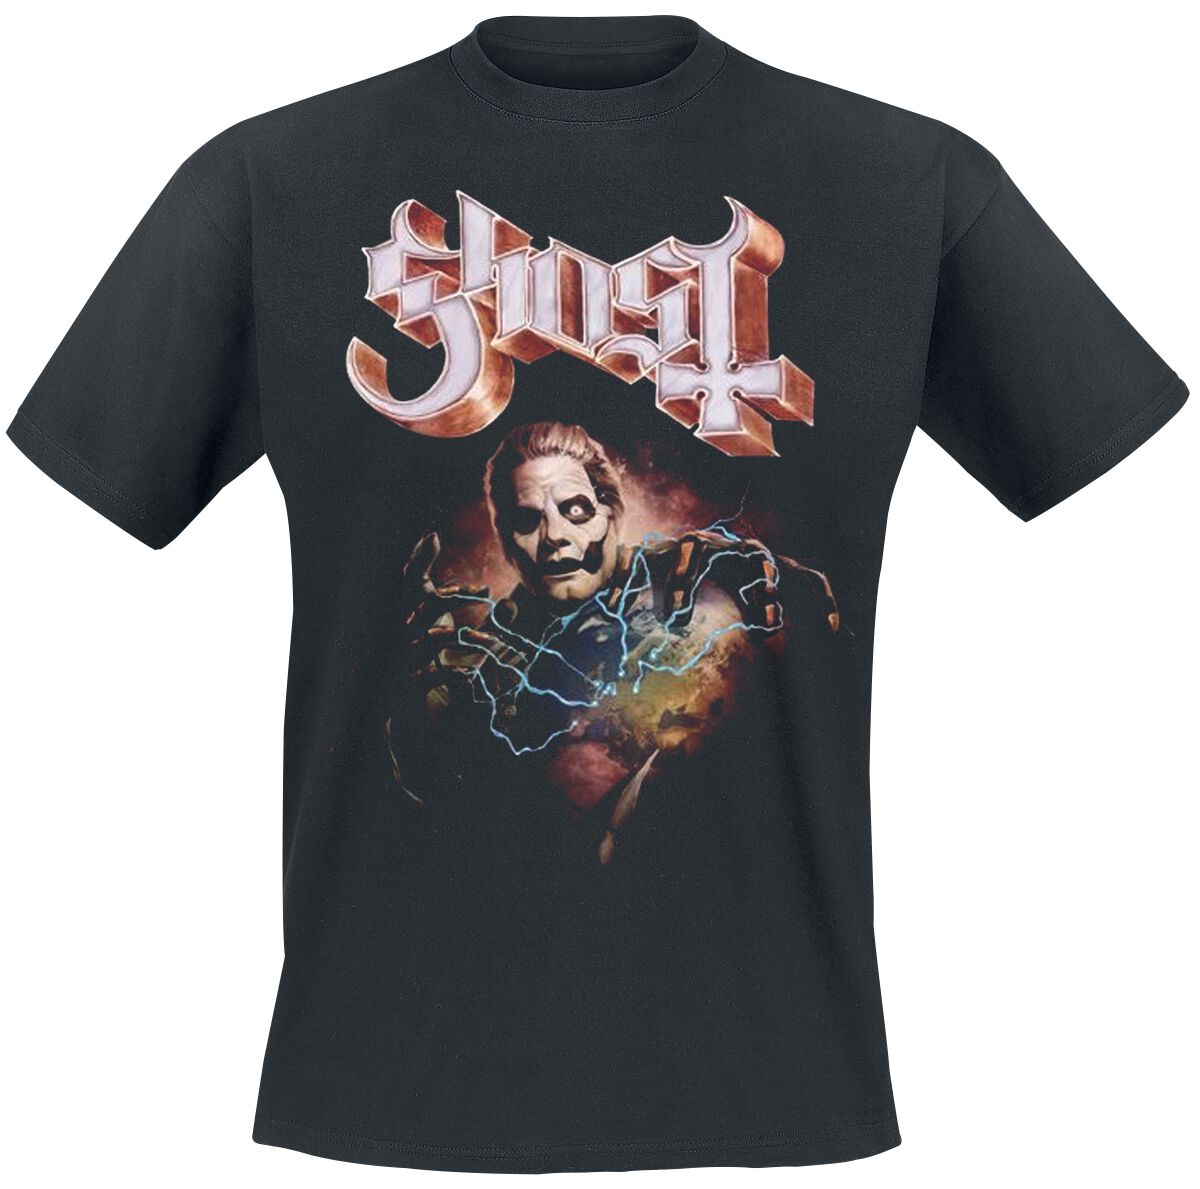 Ghost T-Shirt - Europe 23 Admat Tour Shirt - S bis 4XL - für Männer - Größe L - schwarz  - Lizenziertes Merchandise!